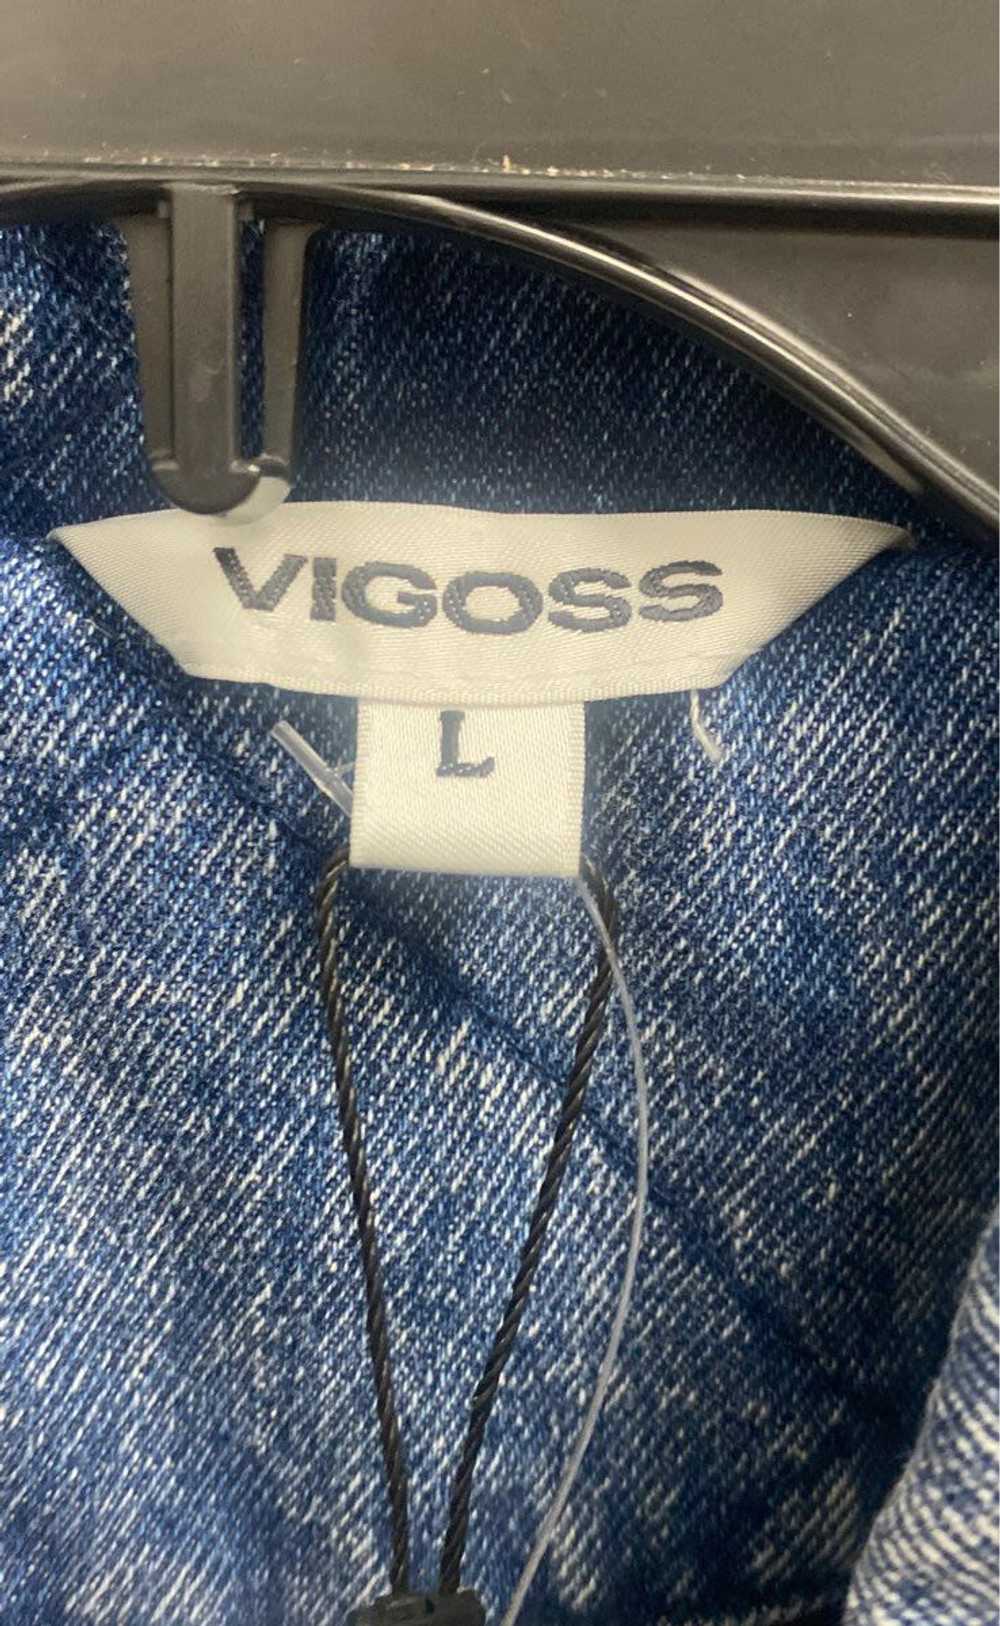 Vigoss Blue Jacket - Size Large - image 4